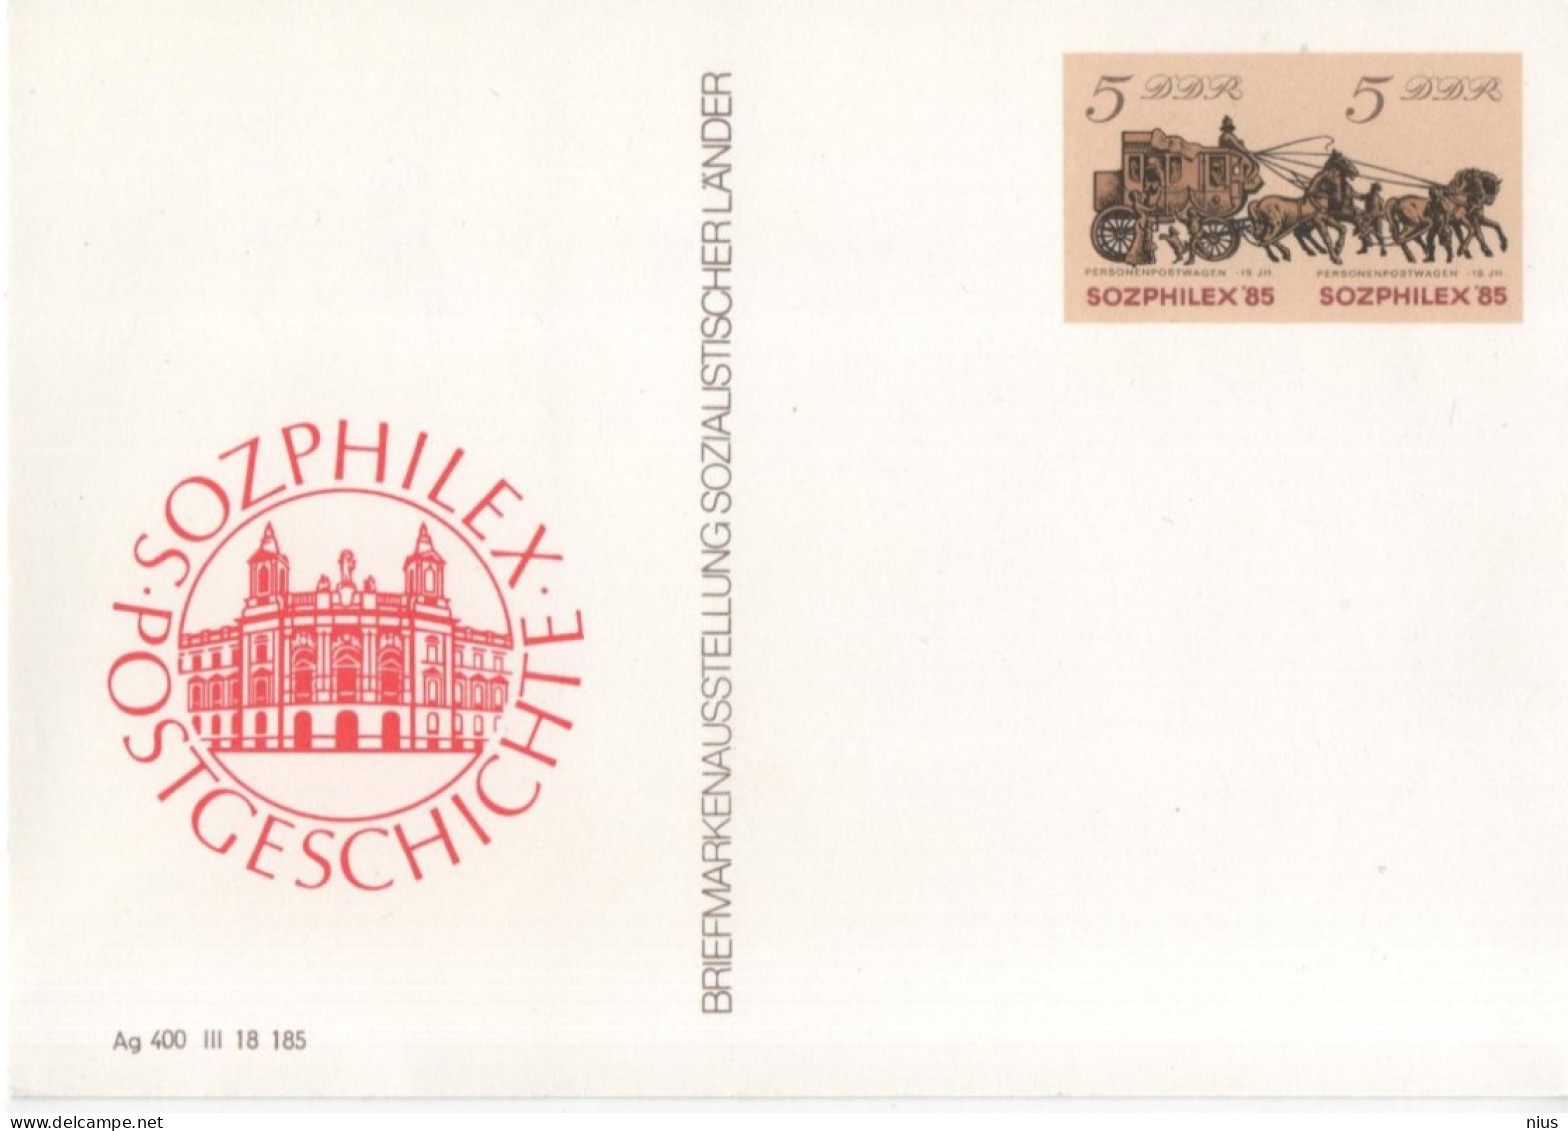 Germany DDR 1985 Briefmarkenausstellung Sozialistischer Lander Stamp Exhibition Of Socialist Countries, SOZPHILEX'85 - Cartes Postales - Neuves